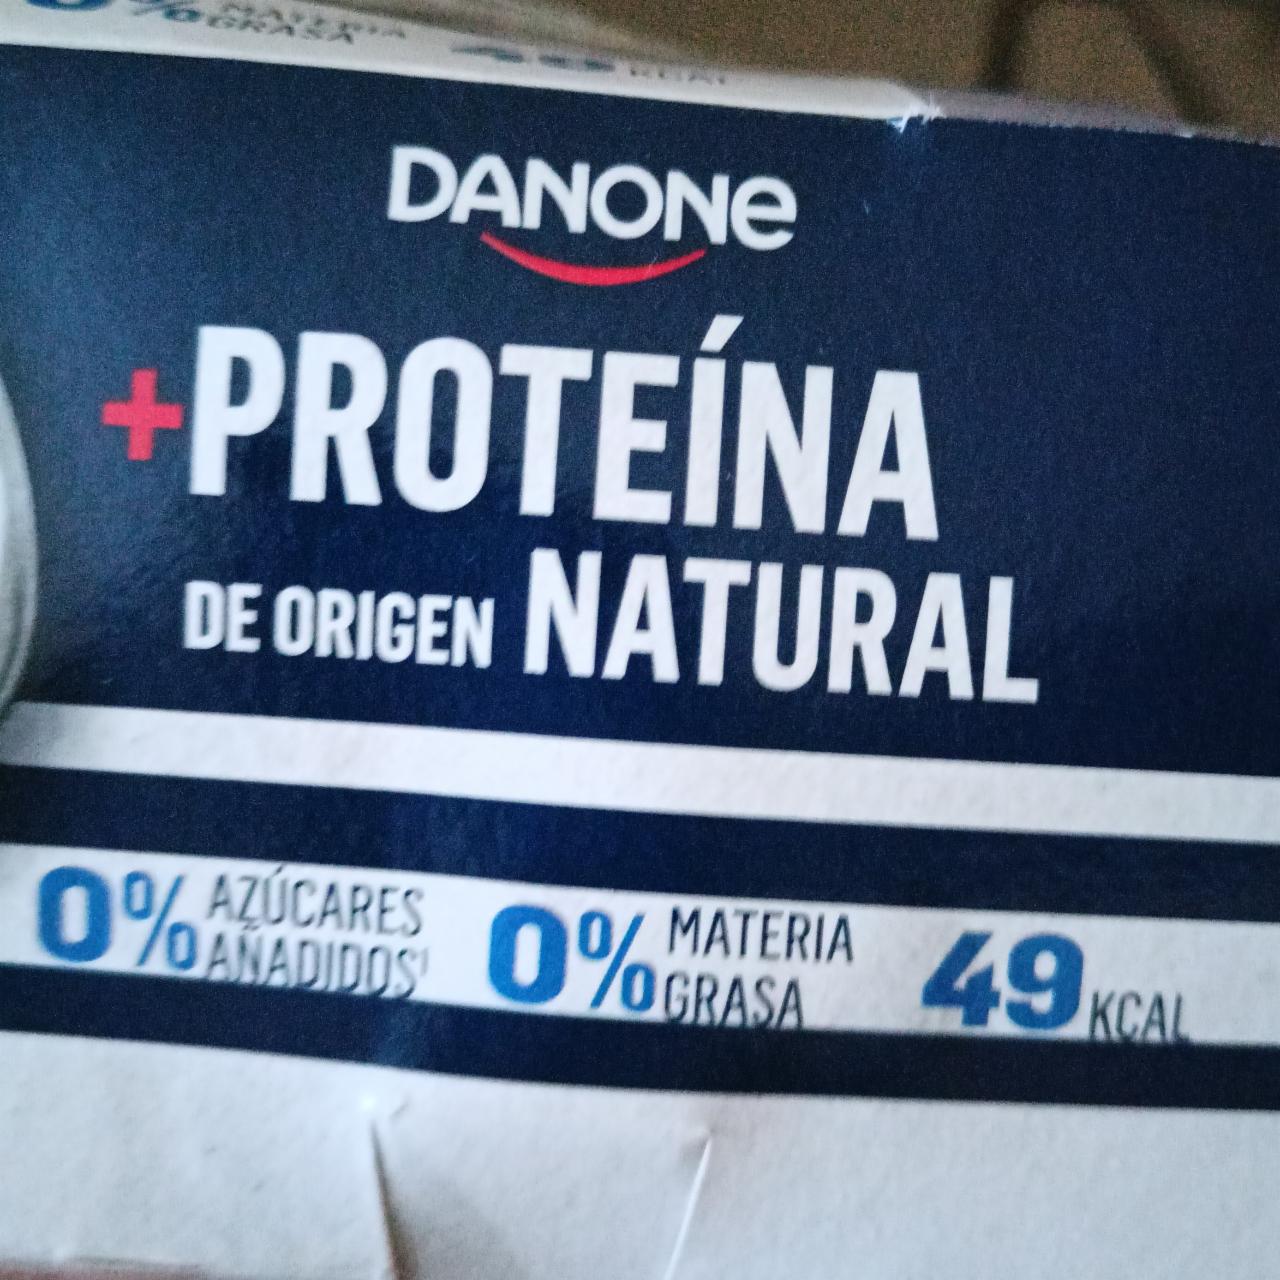 Fotografie - Proteína de origen Natural Danone